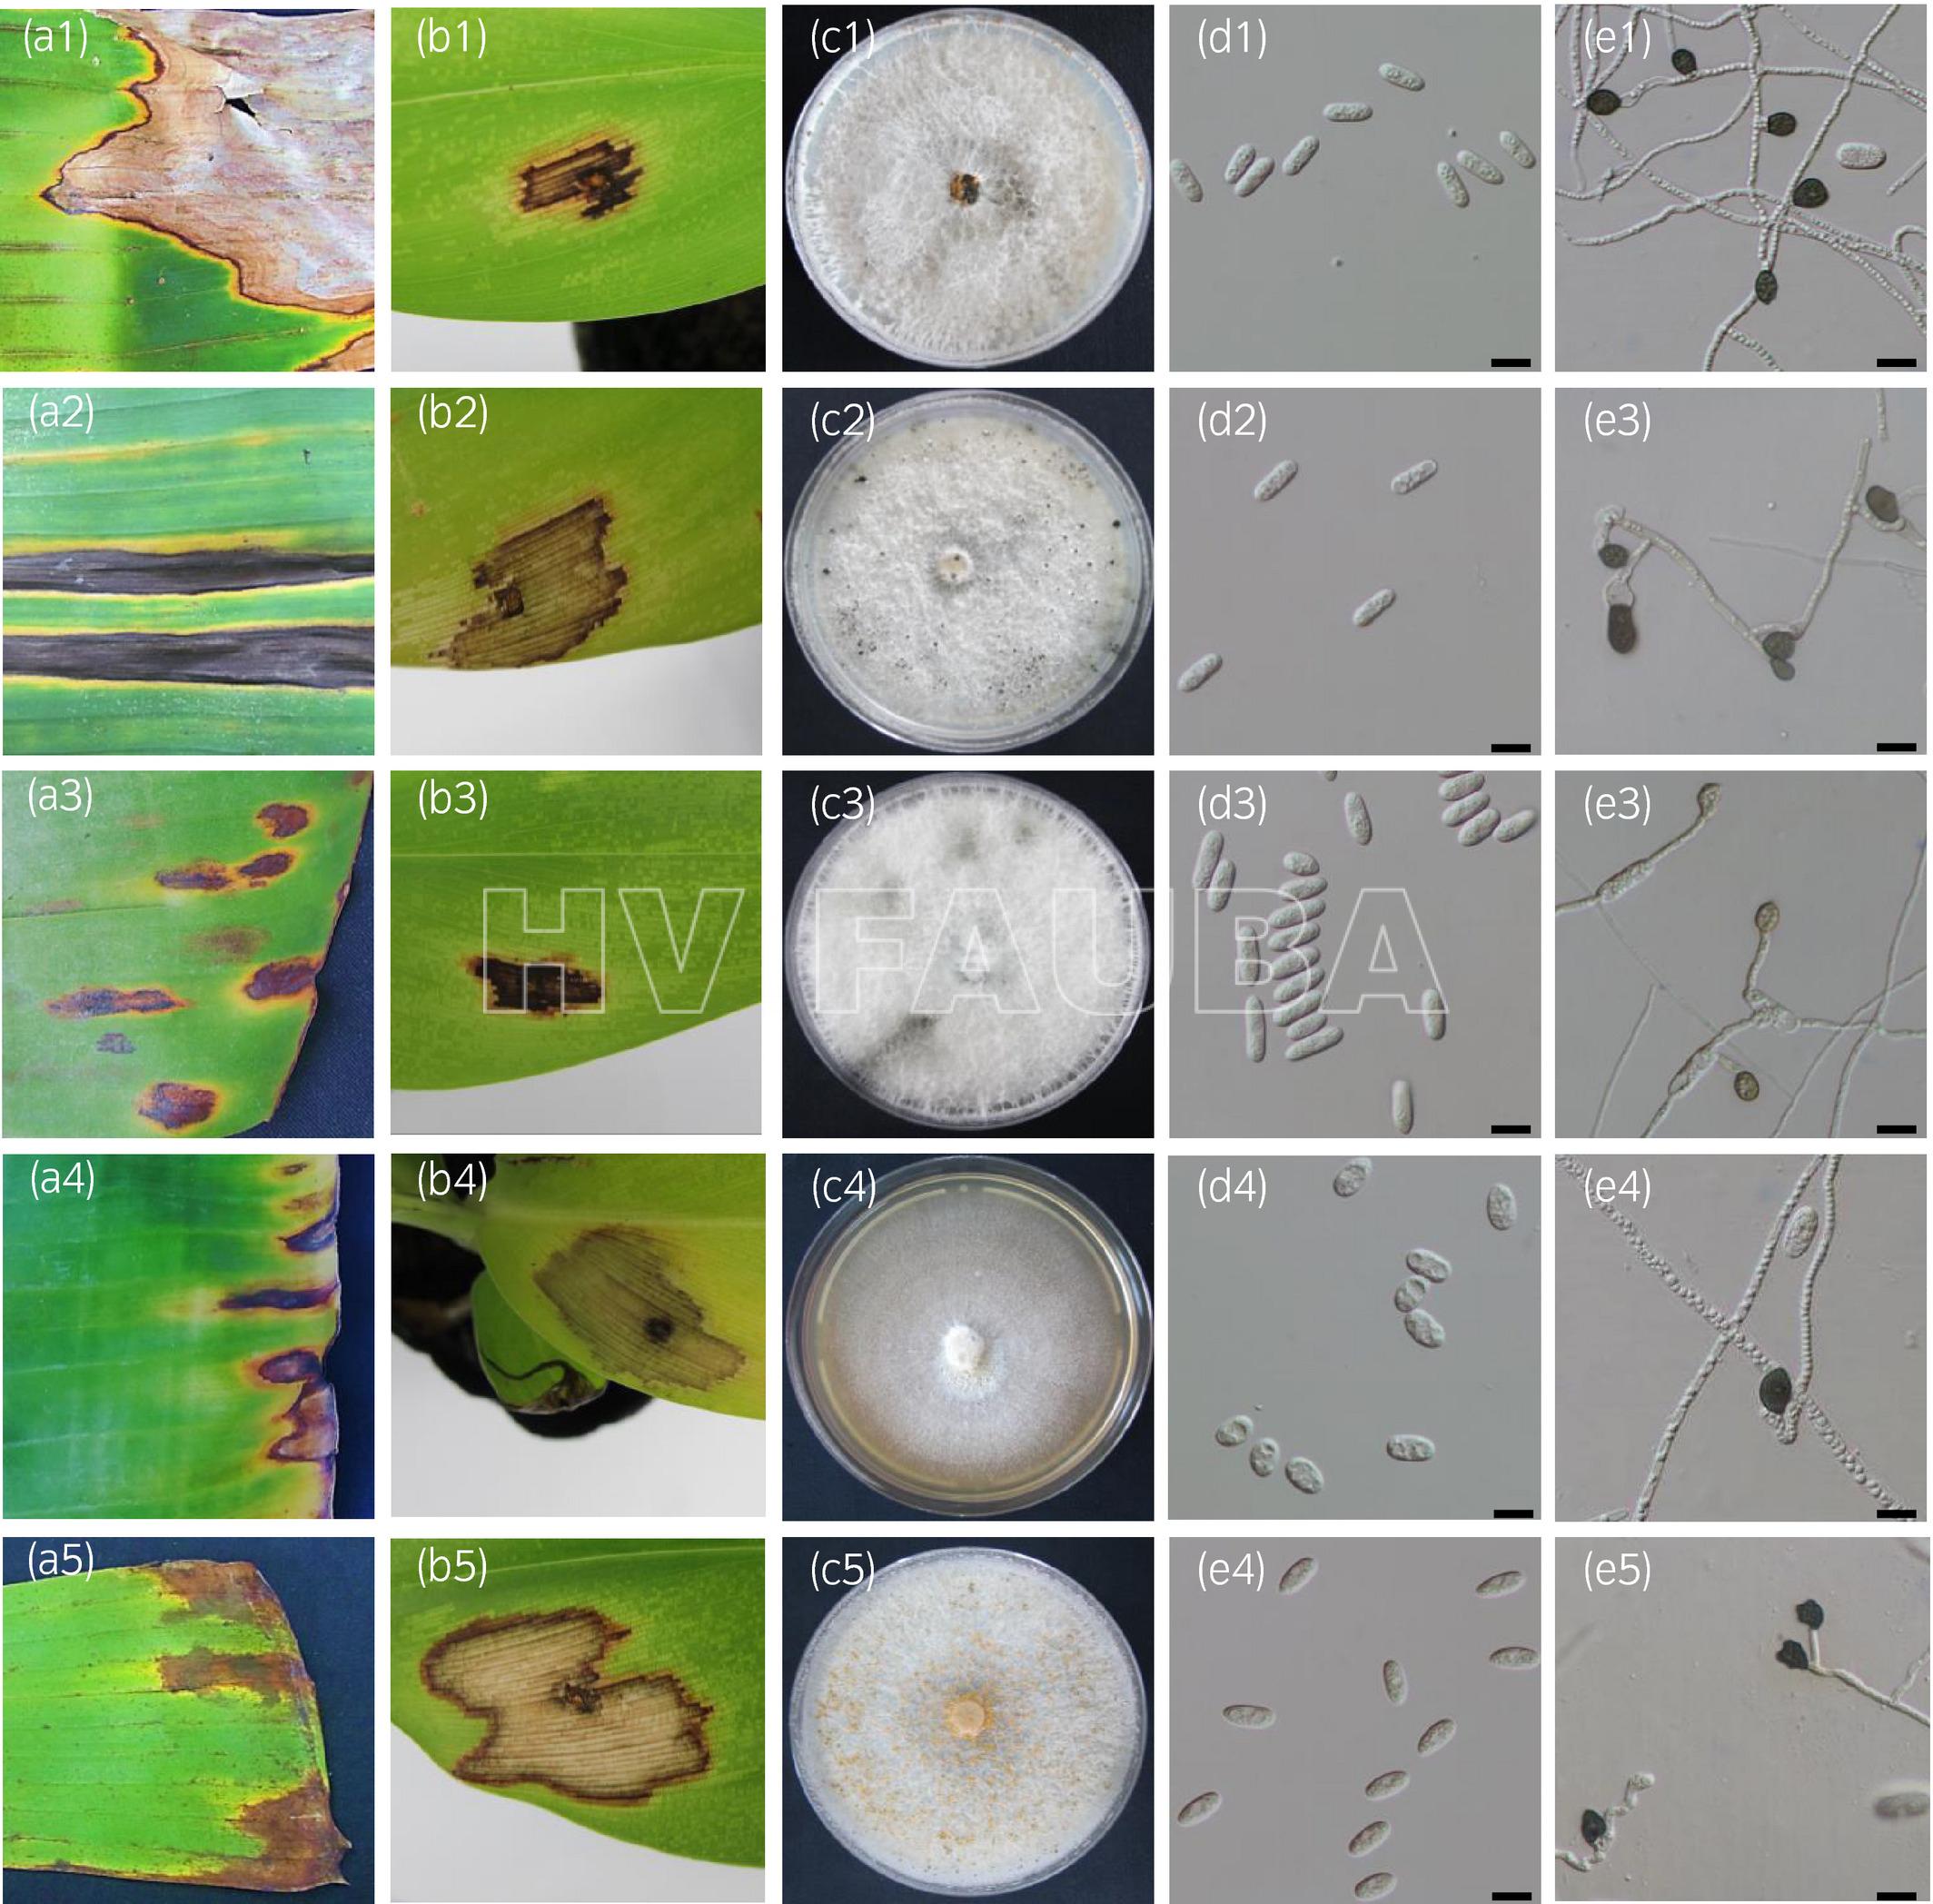 Características de cinco especies de Colletotrichum obtenidas de banano en China. Cada especie está representada en cinco imágenes (a – e). (a) Síntomas en hojas de banano; (b) lesión en hojas de banano en prueba de patogenicidad, 15 días después de la inoculación e incubación a 28 ℃; (c) morfología de la colonia en agar papa dextrosa después de 10 días a 28 °C; (d) conidios; (e) apresorios miceliales. Las placas 1 a 5 se refieren respectivamente a C. fructicola, C. cliviicola, C. siamense, C. karstii y C. musae. Barra de escala = 10 μm. Autor: Huang et al., 2021.